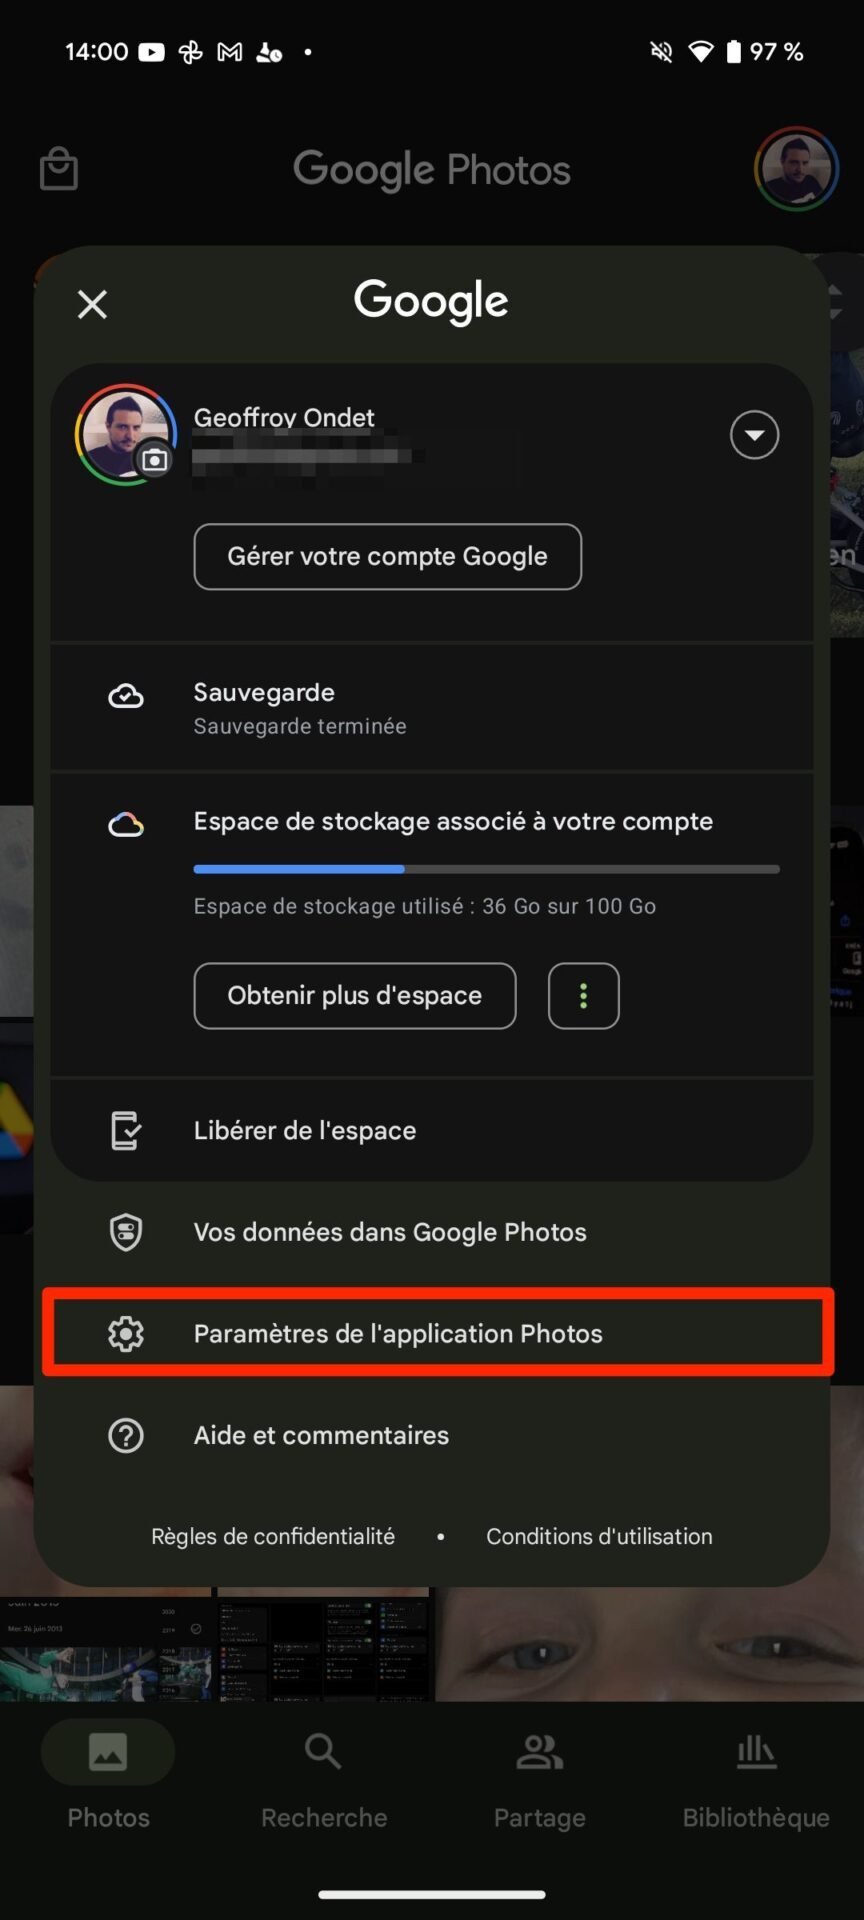 Maîtriser Google Photos5 1